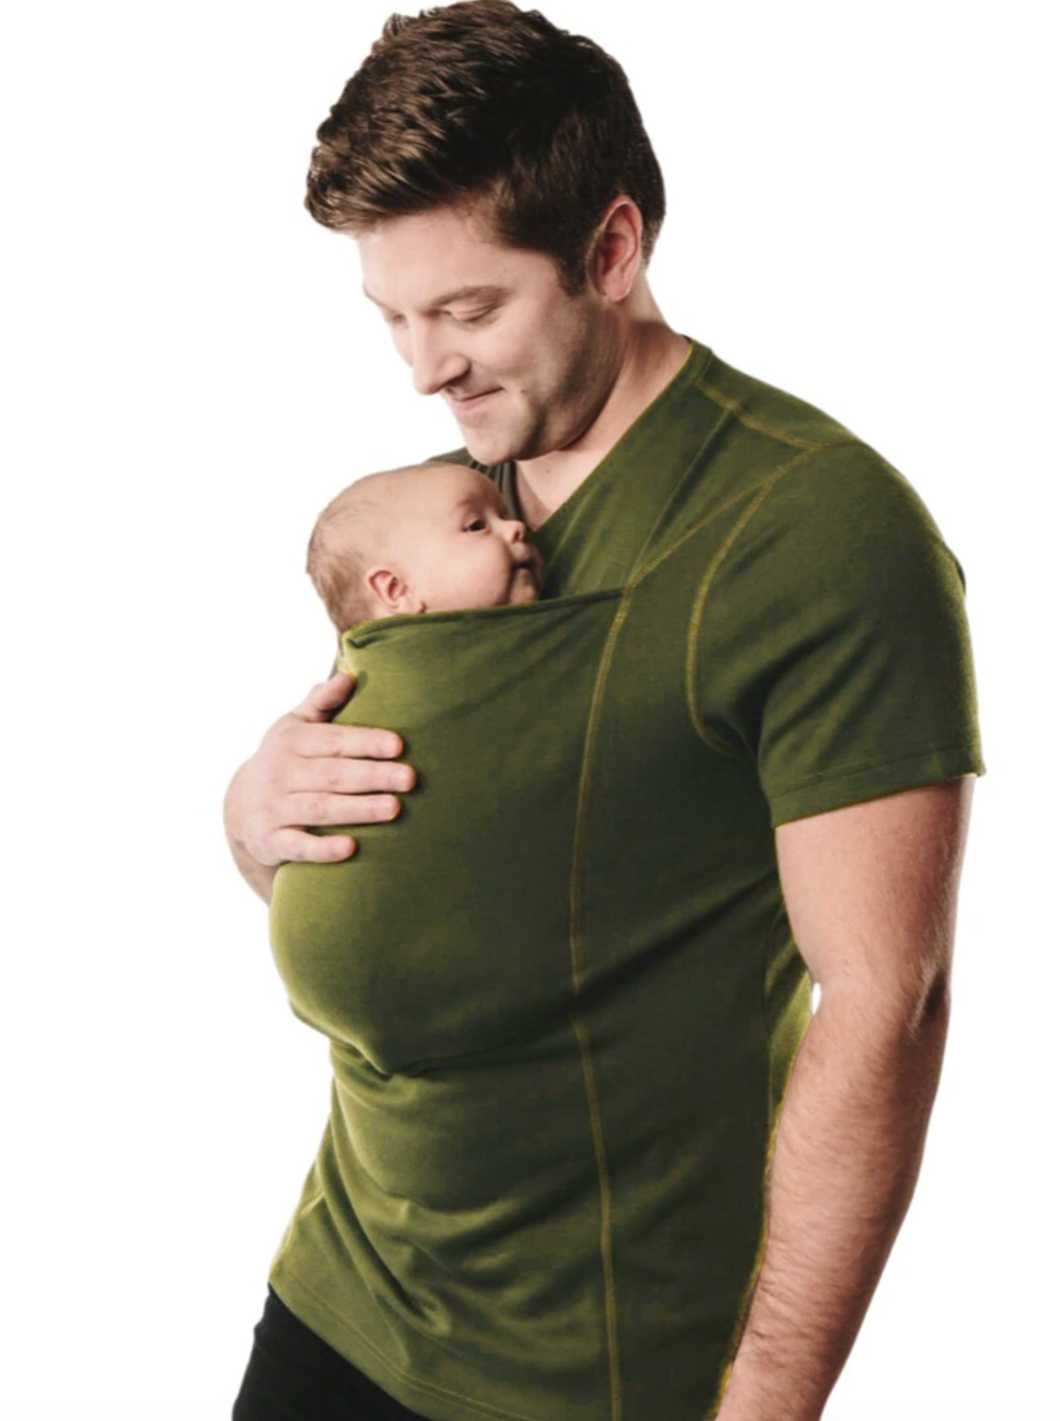 newborn carrier shirt